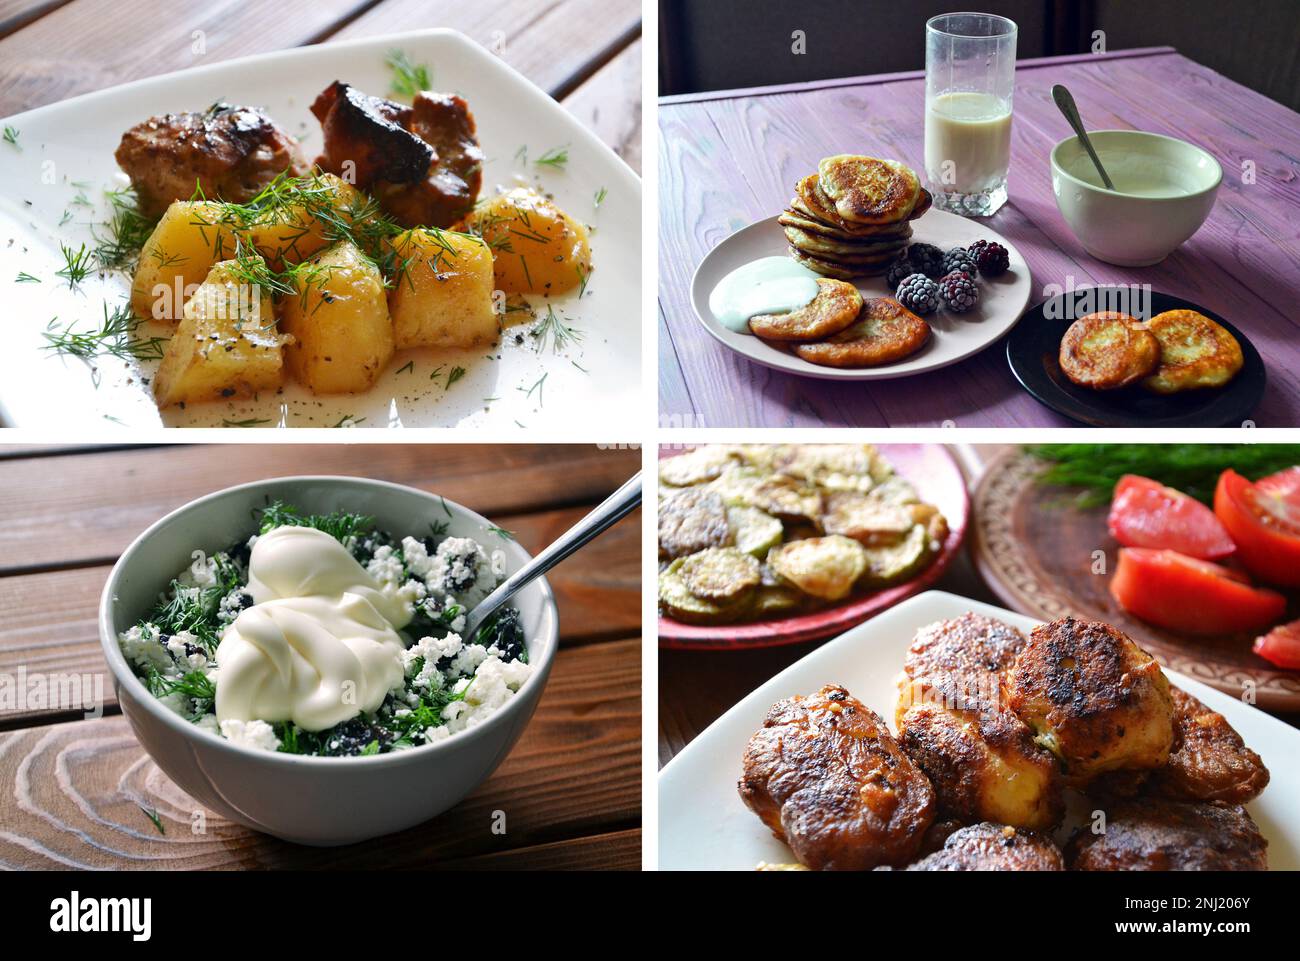 Viande cuite au four avec potatoe, crêpes, fromage cottage à la crème aigre de l'aneth, courge et boulettes de viande frites - cuisine ukrainienne traditionnelle Banque D'Images